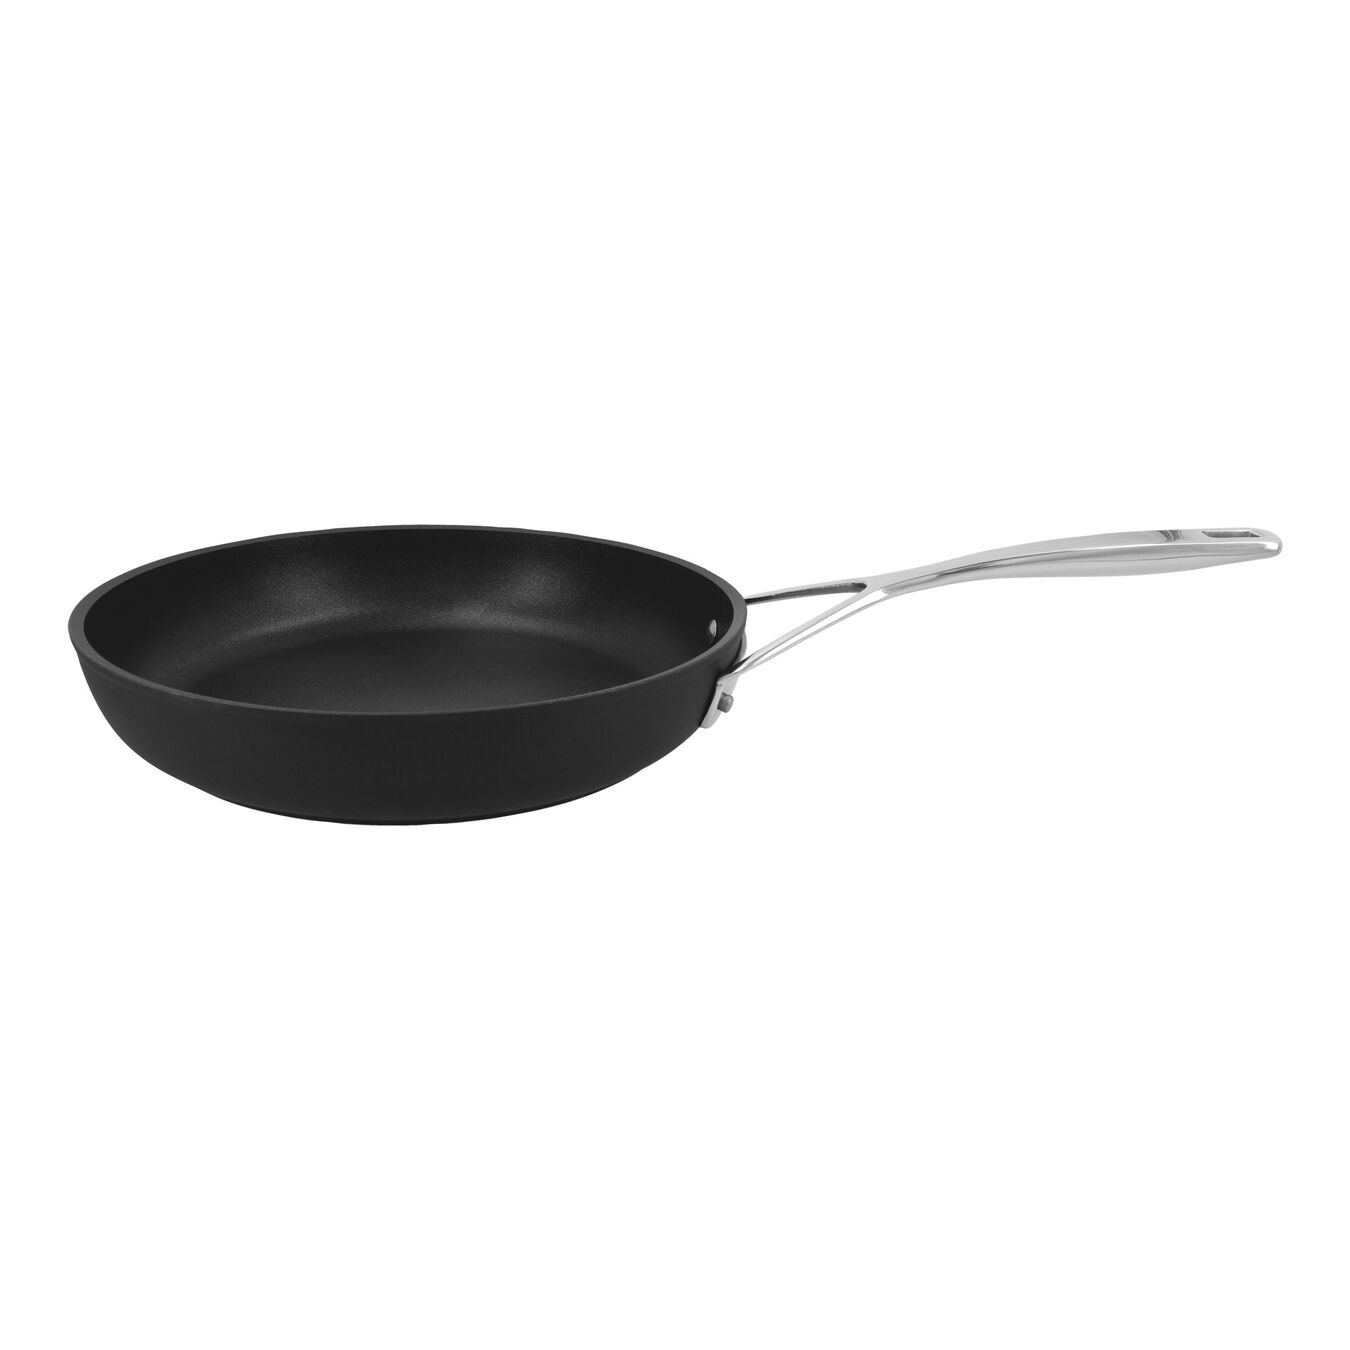 26 cm Aluminium Frying pan silver-black,,large 1